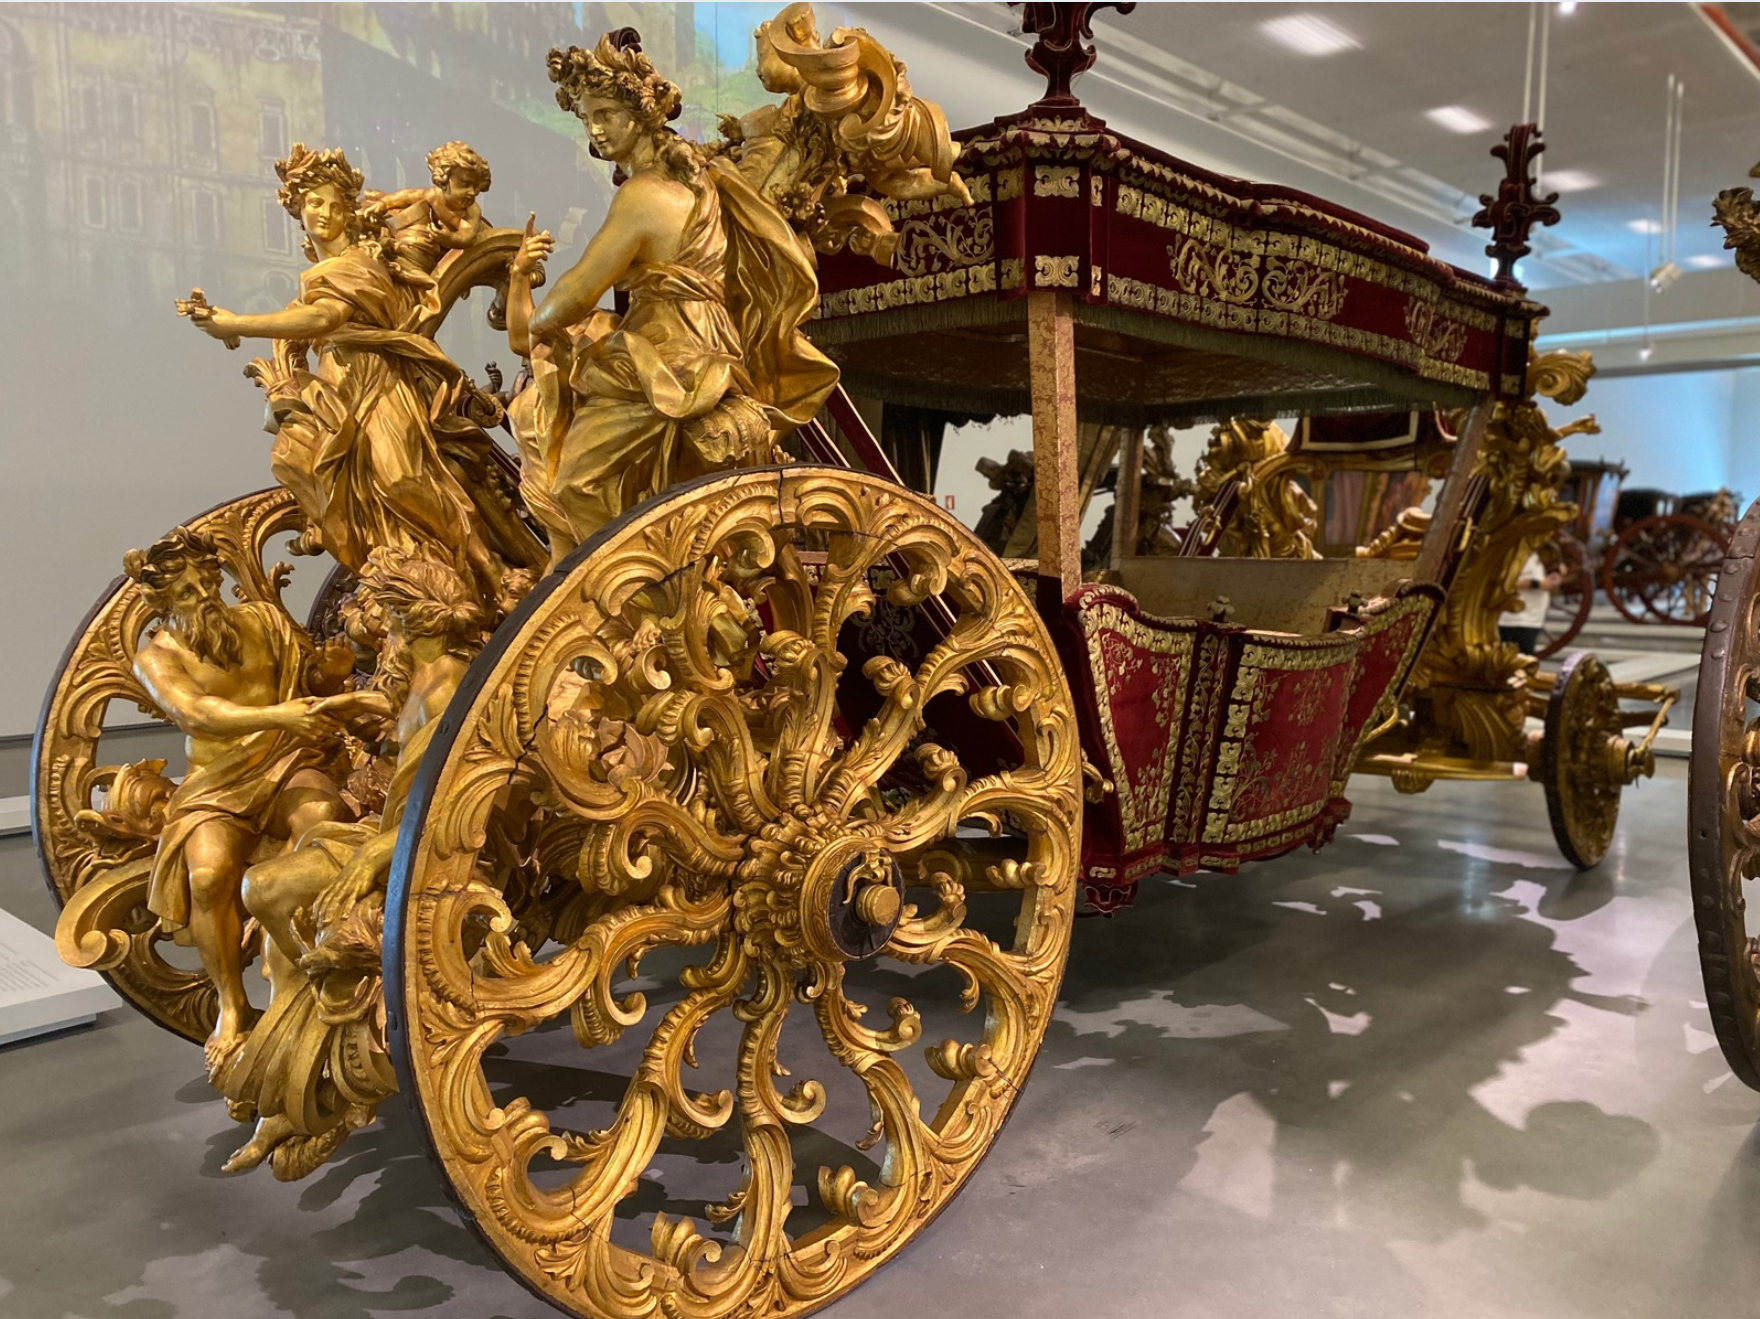 Museo Nazionale delle Carrozze Lisbona: nell'immagine una carrozza color oro.